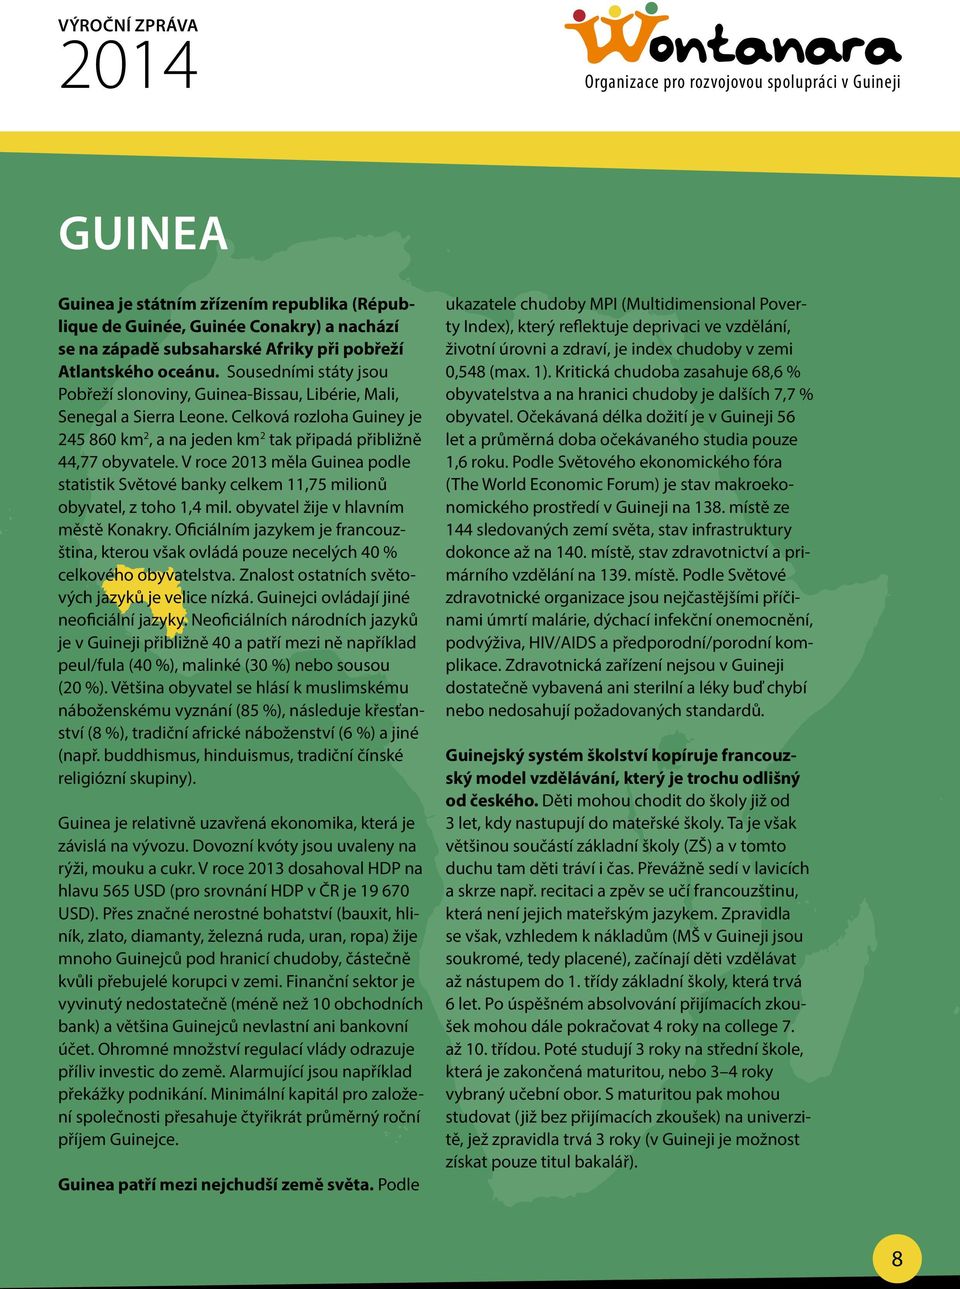 V roce 2013 měla Guinea podle statistik Světové banky celkem 11,75 milionů obyvatel, z toho 1,4 mil. obyvatel žije v hlavním městě Konakry.